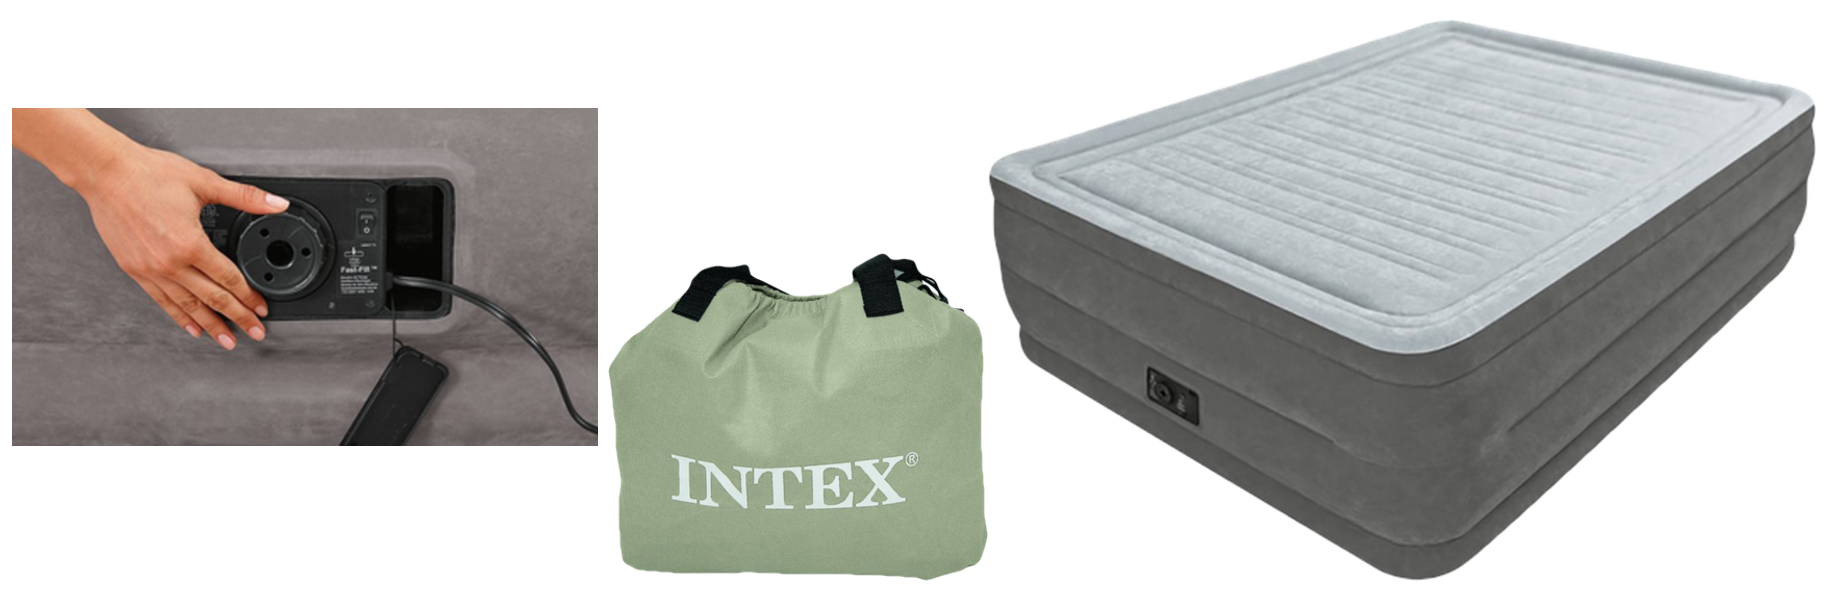 Intex Comfort best air mattress